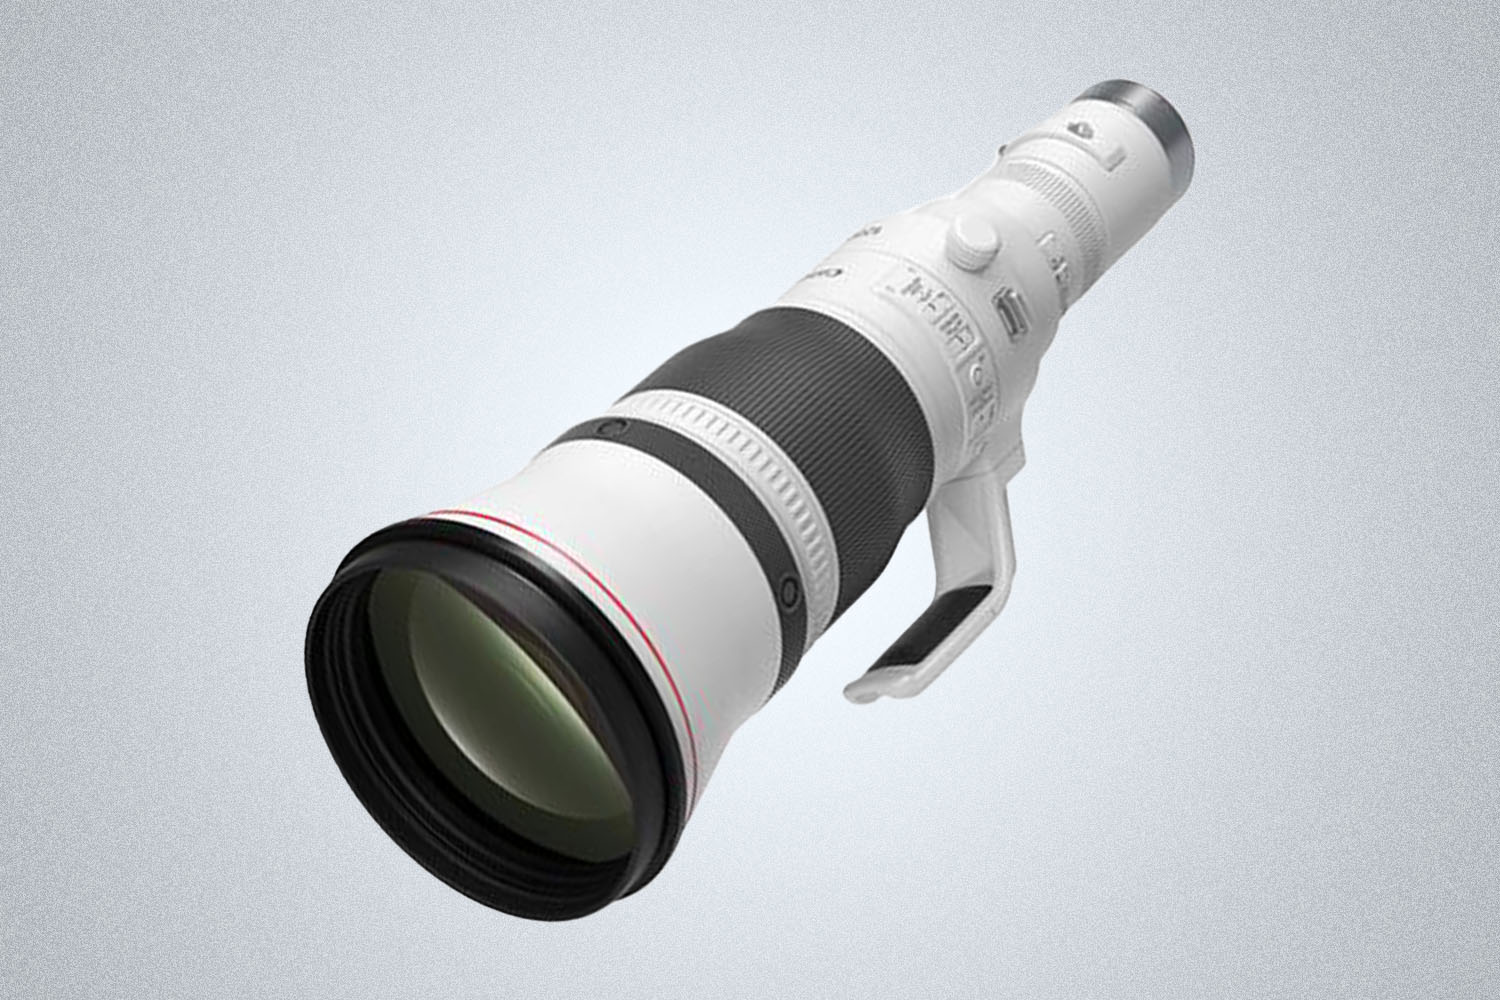 A very large, telescopic-esque camera lens